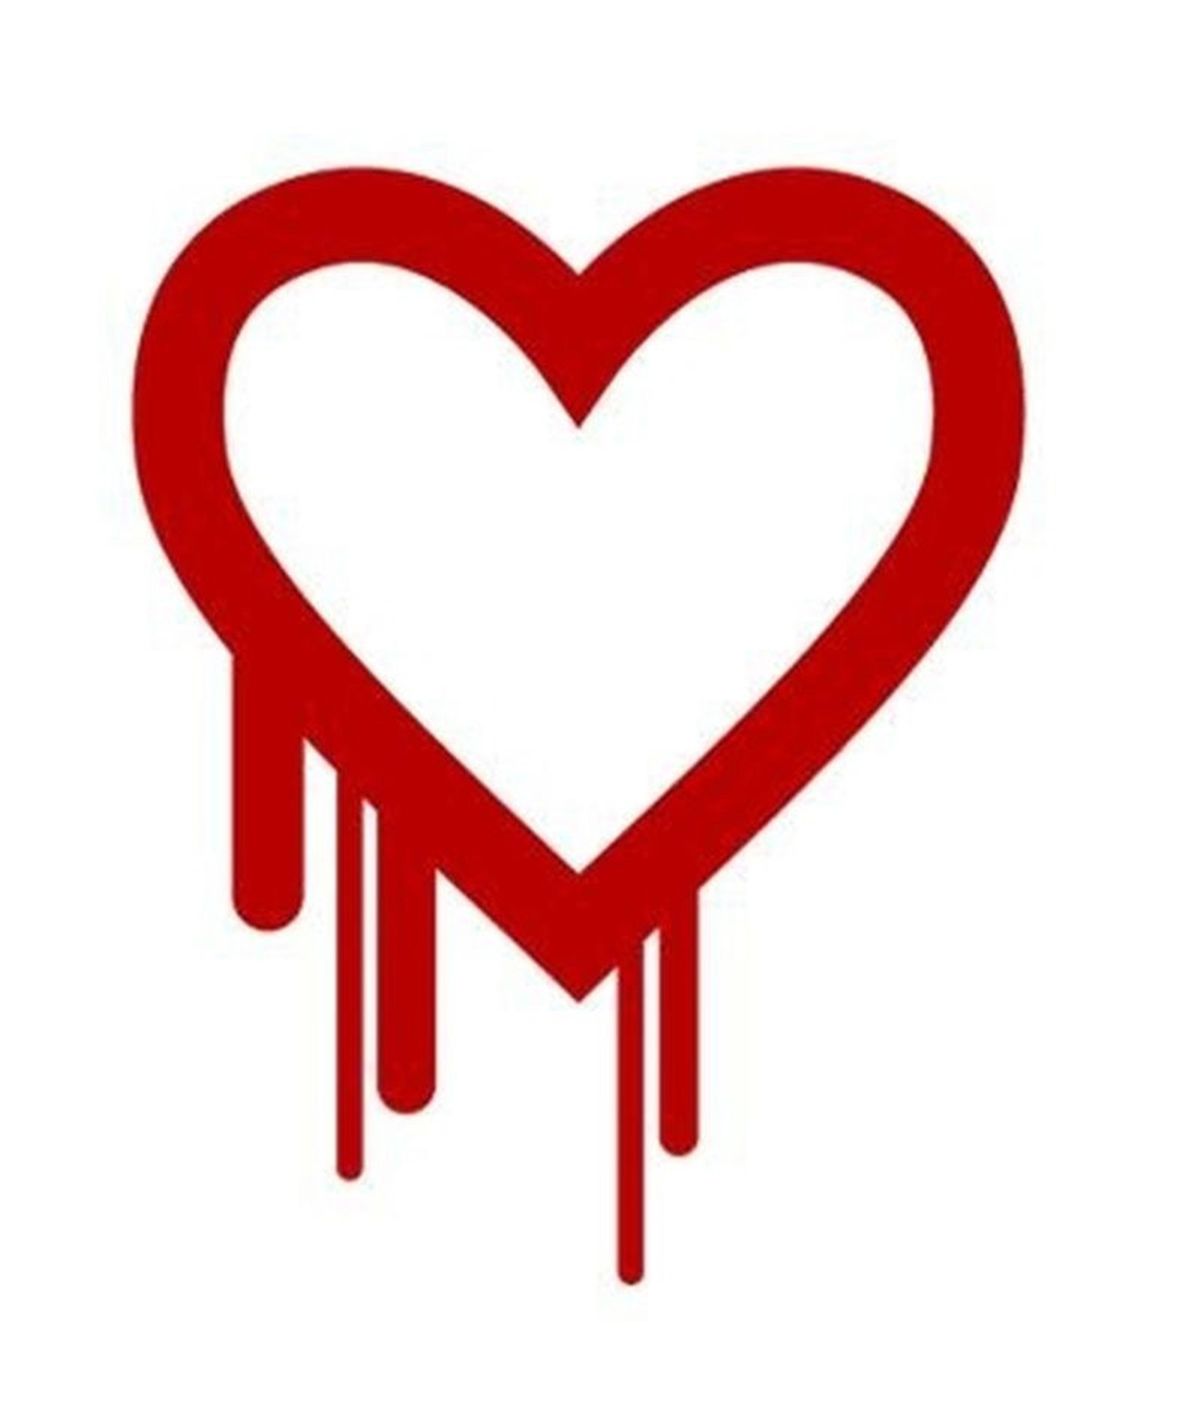 Descubren el mayor fallo de seguridad en Internet: el bug Heartbleed